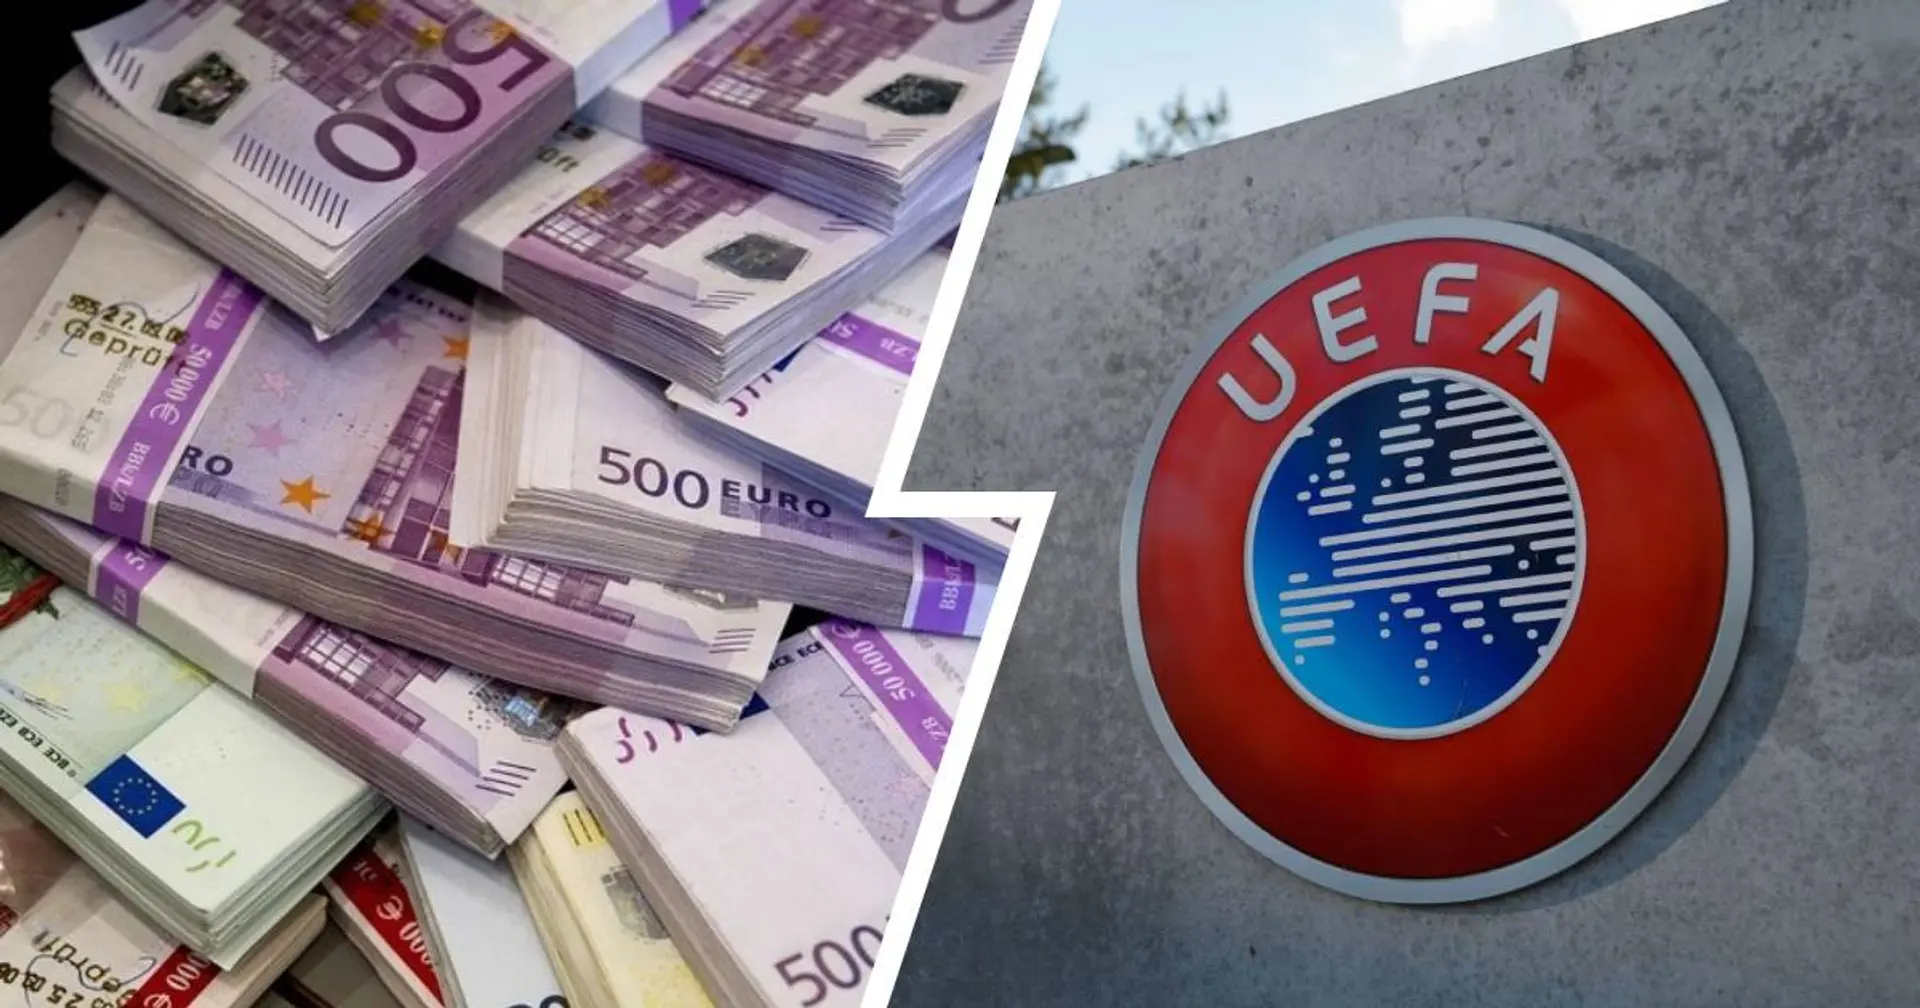 UEFA sanktioniert 9 Klubs wegen Verstößen gegen Finanzregeln - welche Vereine sind betroffen?